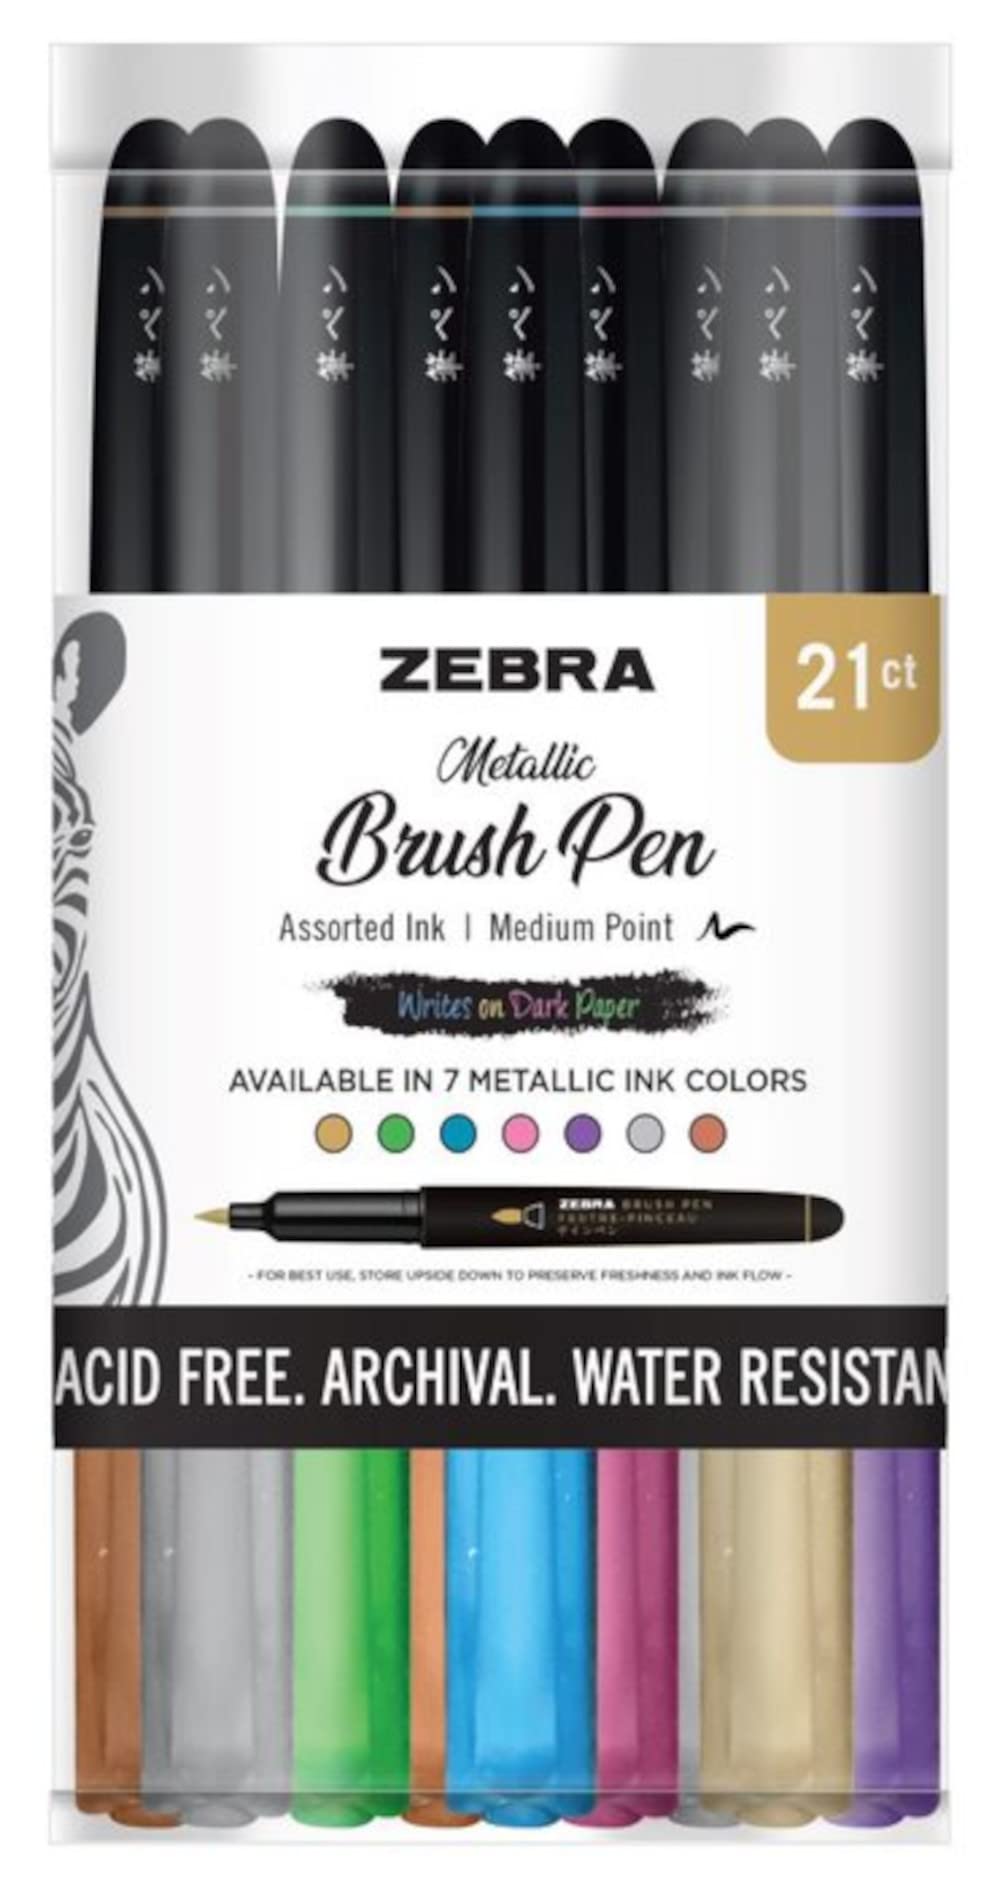 Zebra Pens Funwari Brush Pens